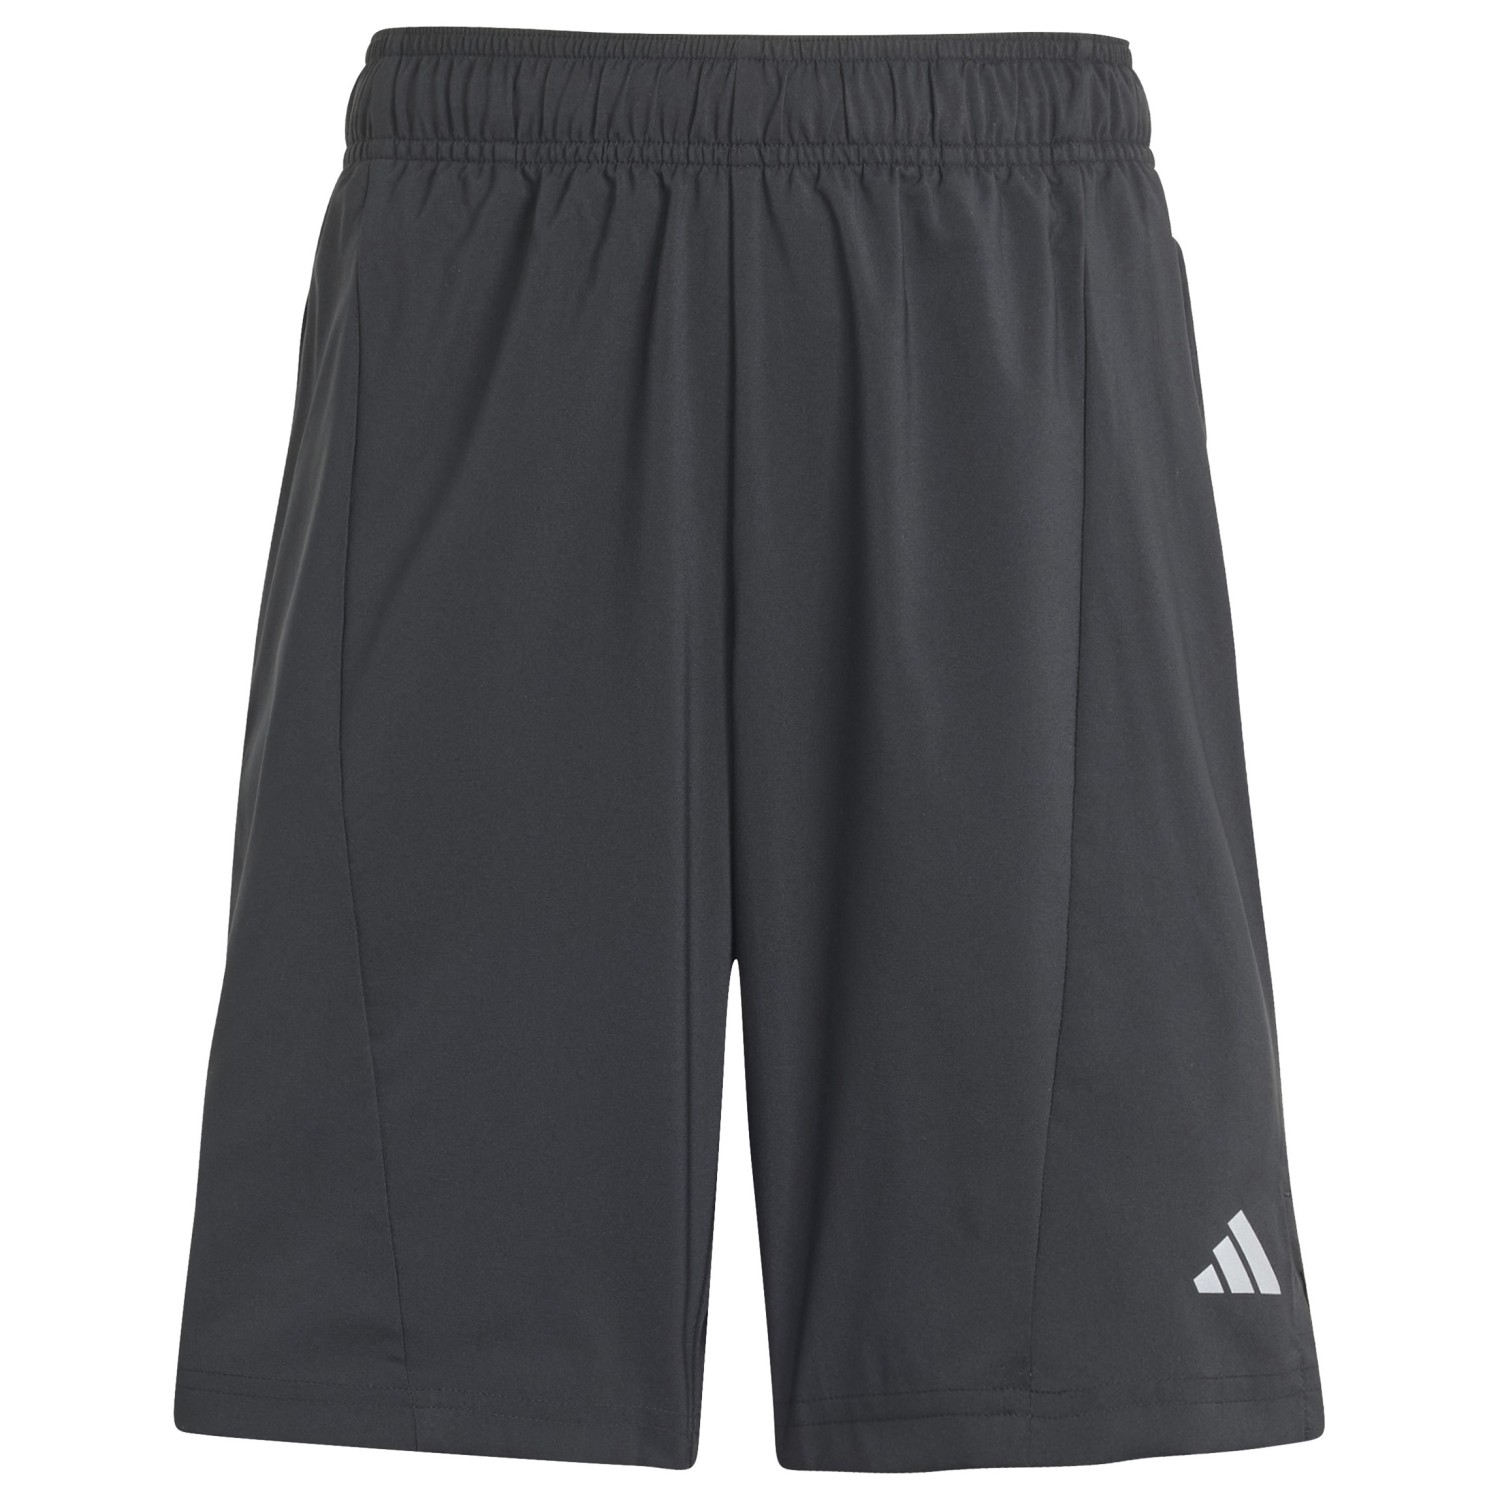 Шорты Adidas Junior's Dessigned 4 Training, цвет Black/Reflective Silver